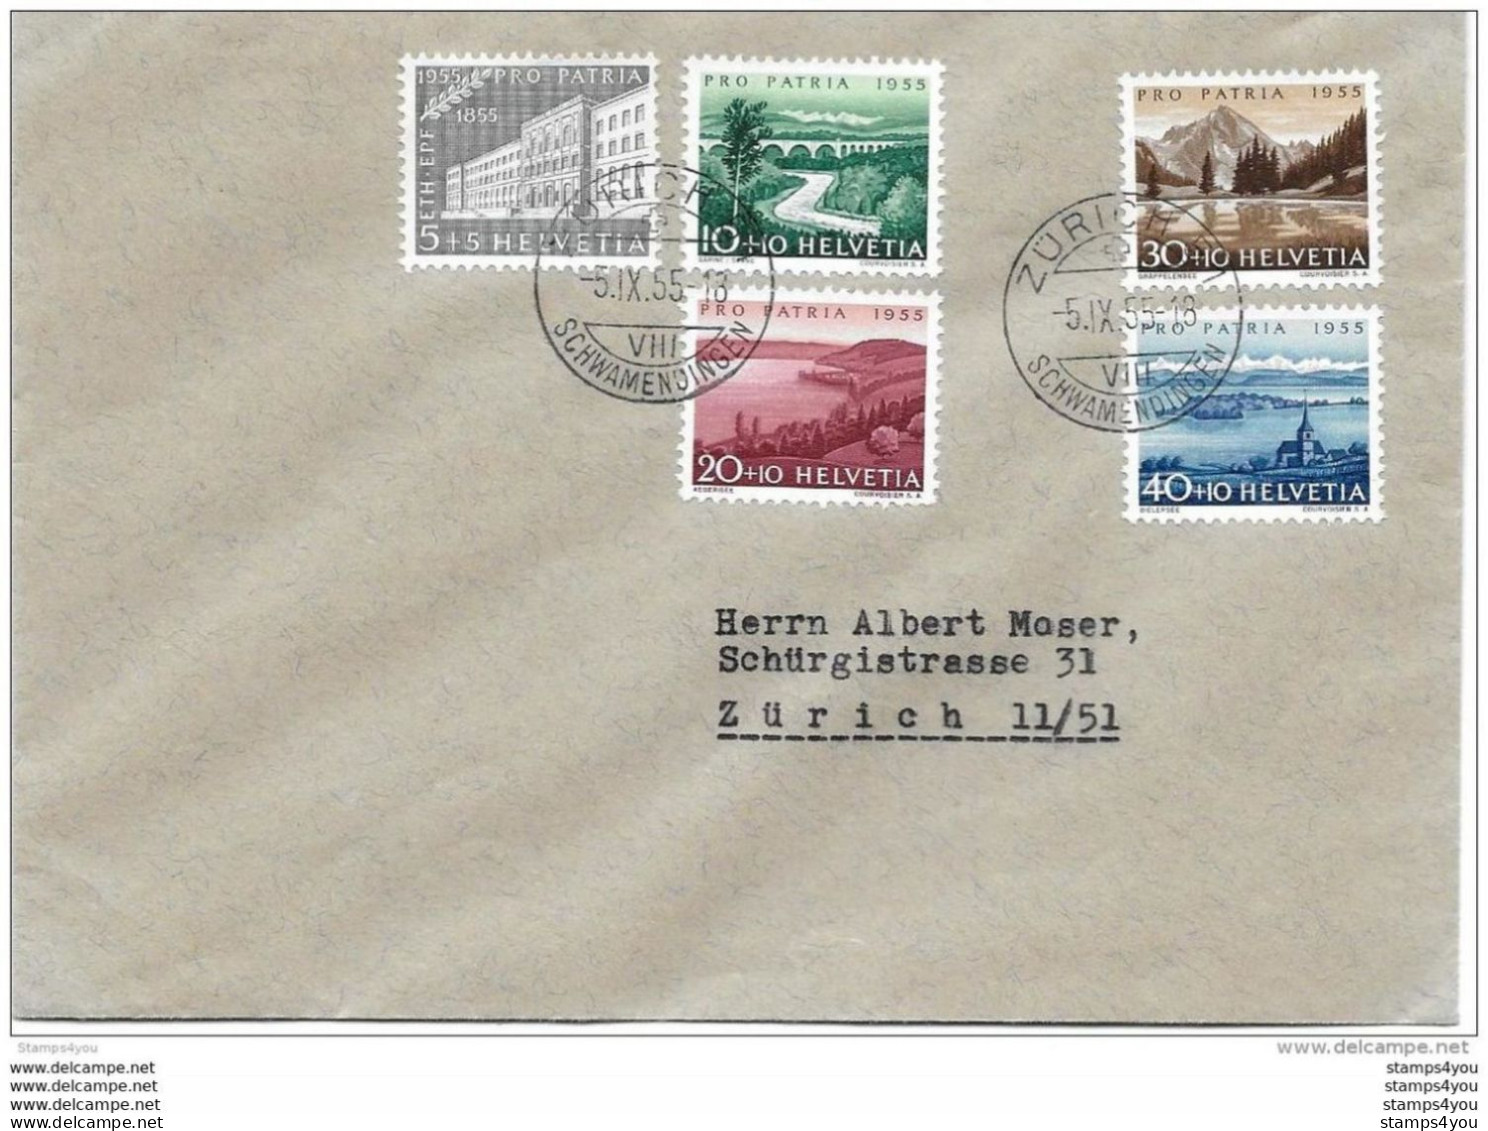 79 - 52 - Enveloppe  Avec Série Pro Patria 1955 - Cachets à Date Zürich Schwamendingen - Covers & Documents